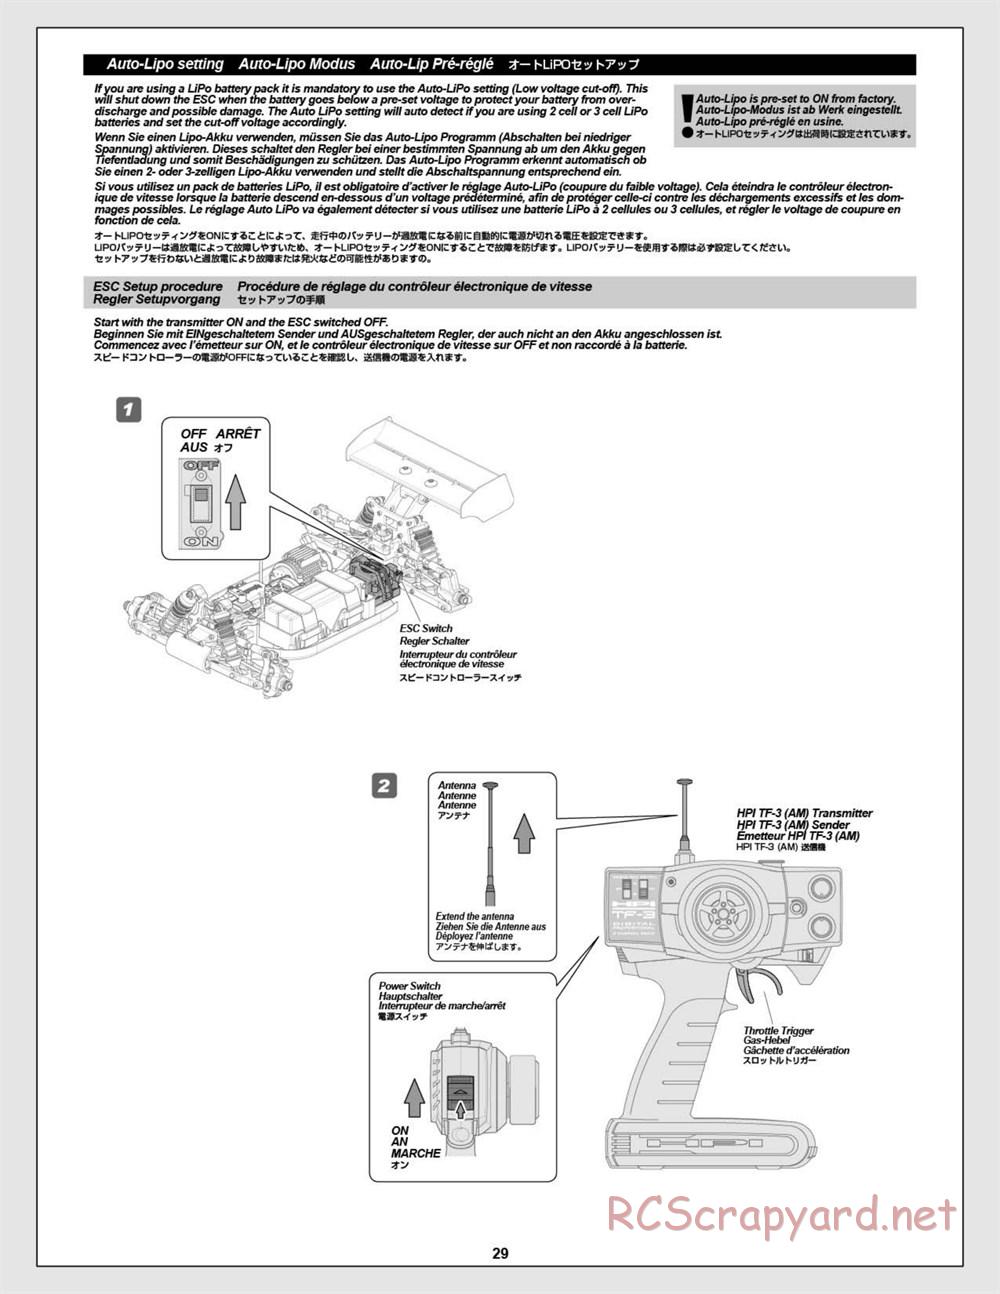 HPI - Vorza Flux HP - Manual - Page 29